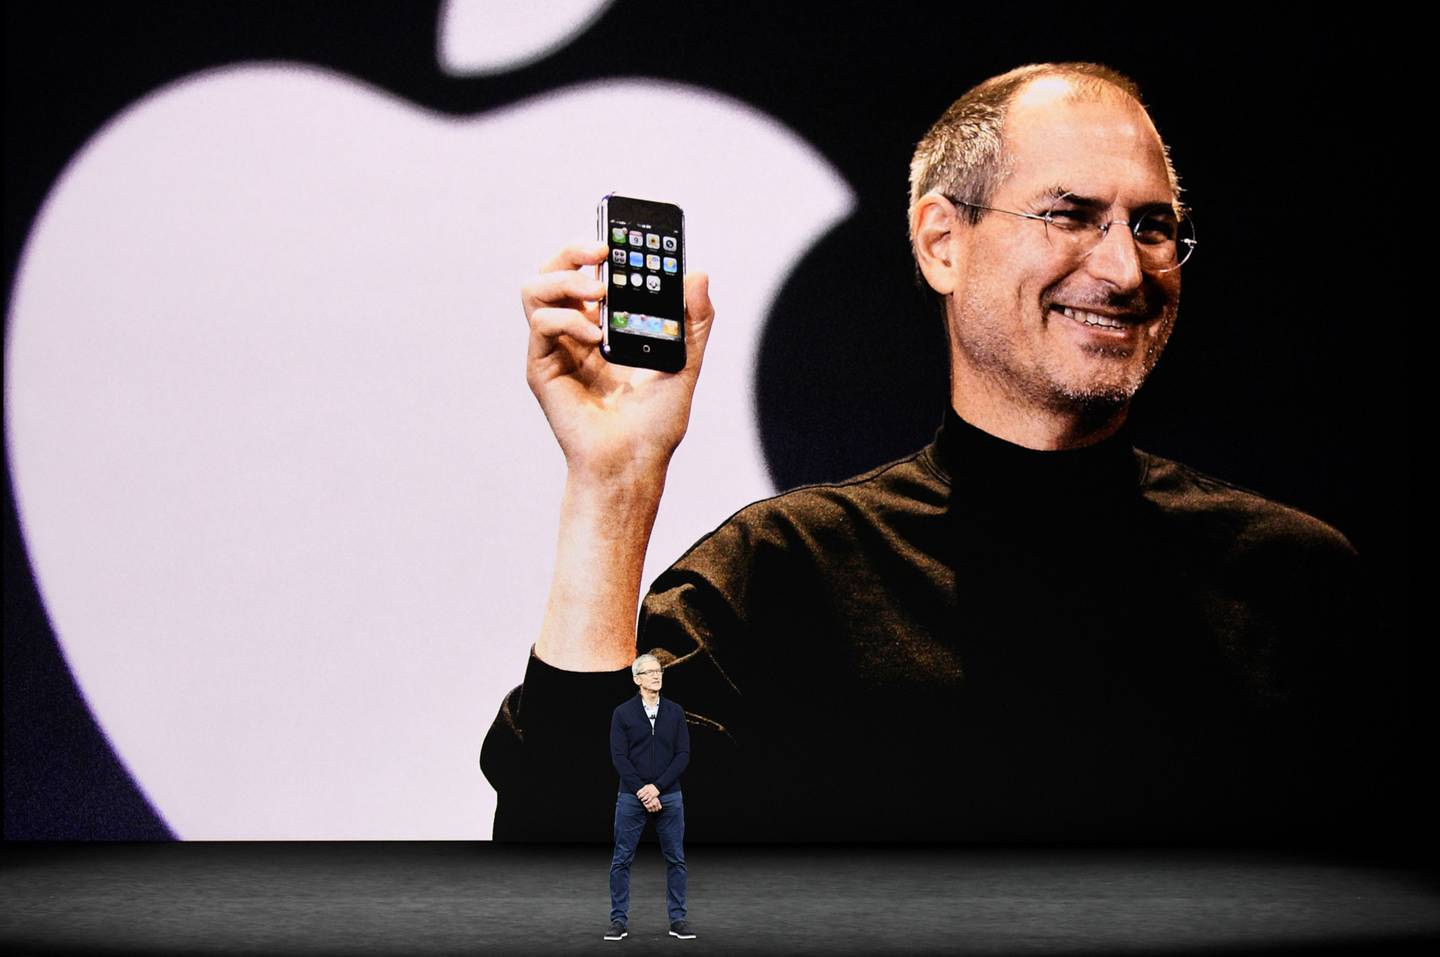 Atrás, Steve Jobs, cofundador de Apple, falleció en octubre del 2011. Adelante, Tim Cook, el actual CEO de la compañía.